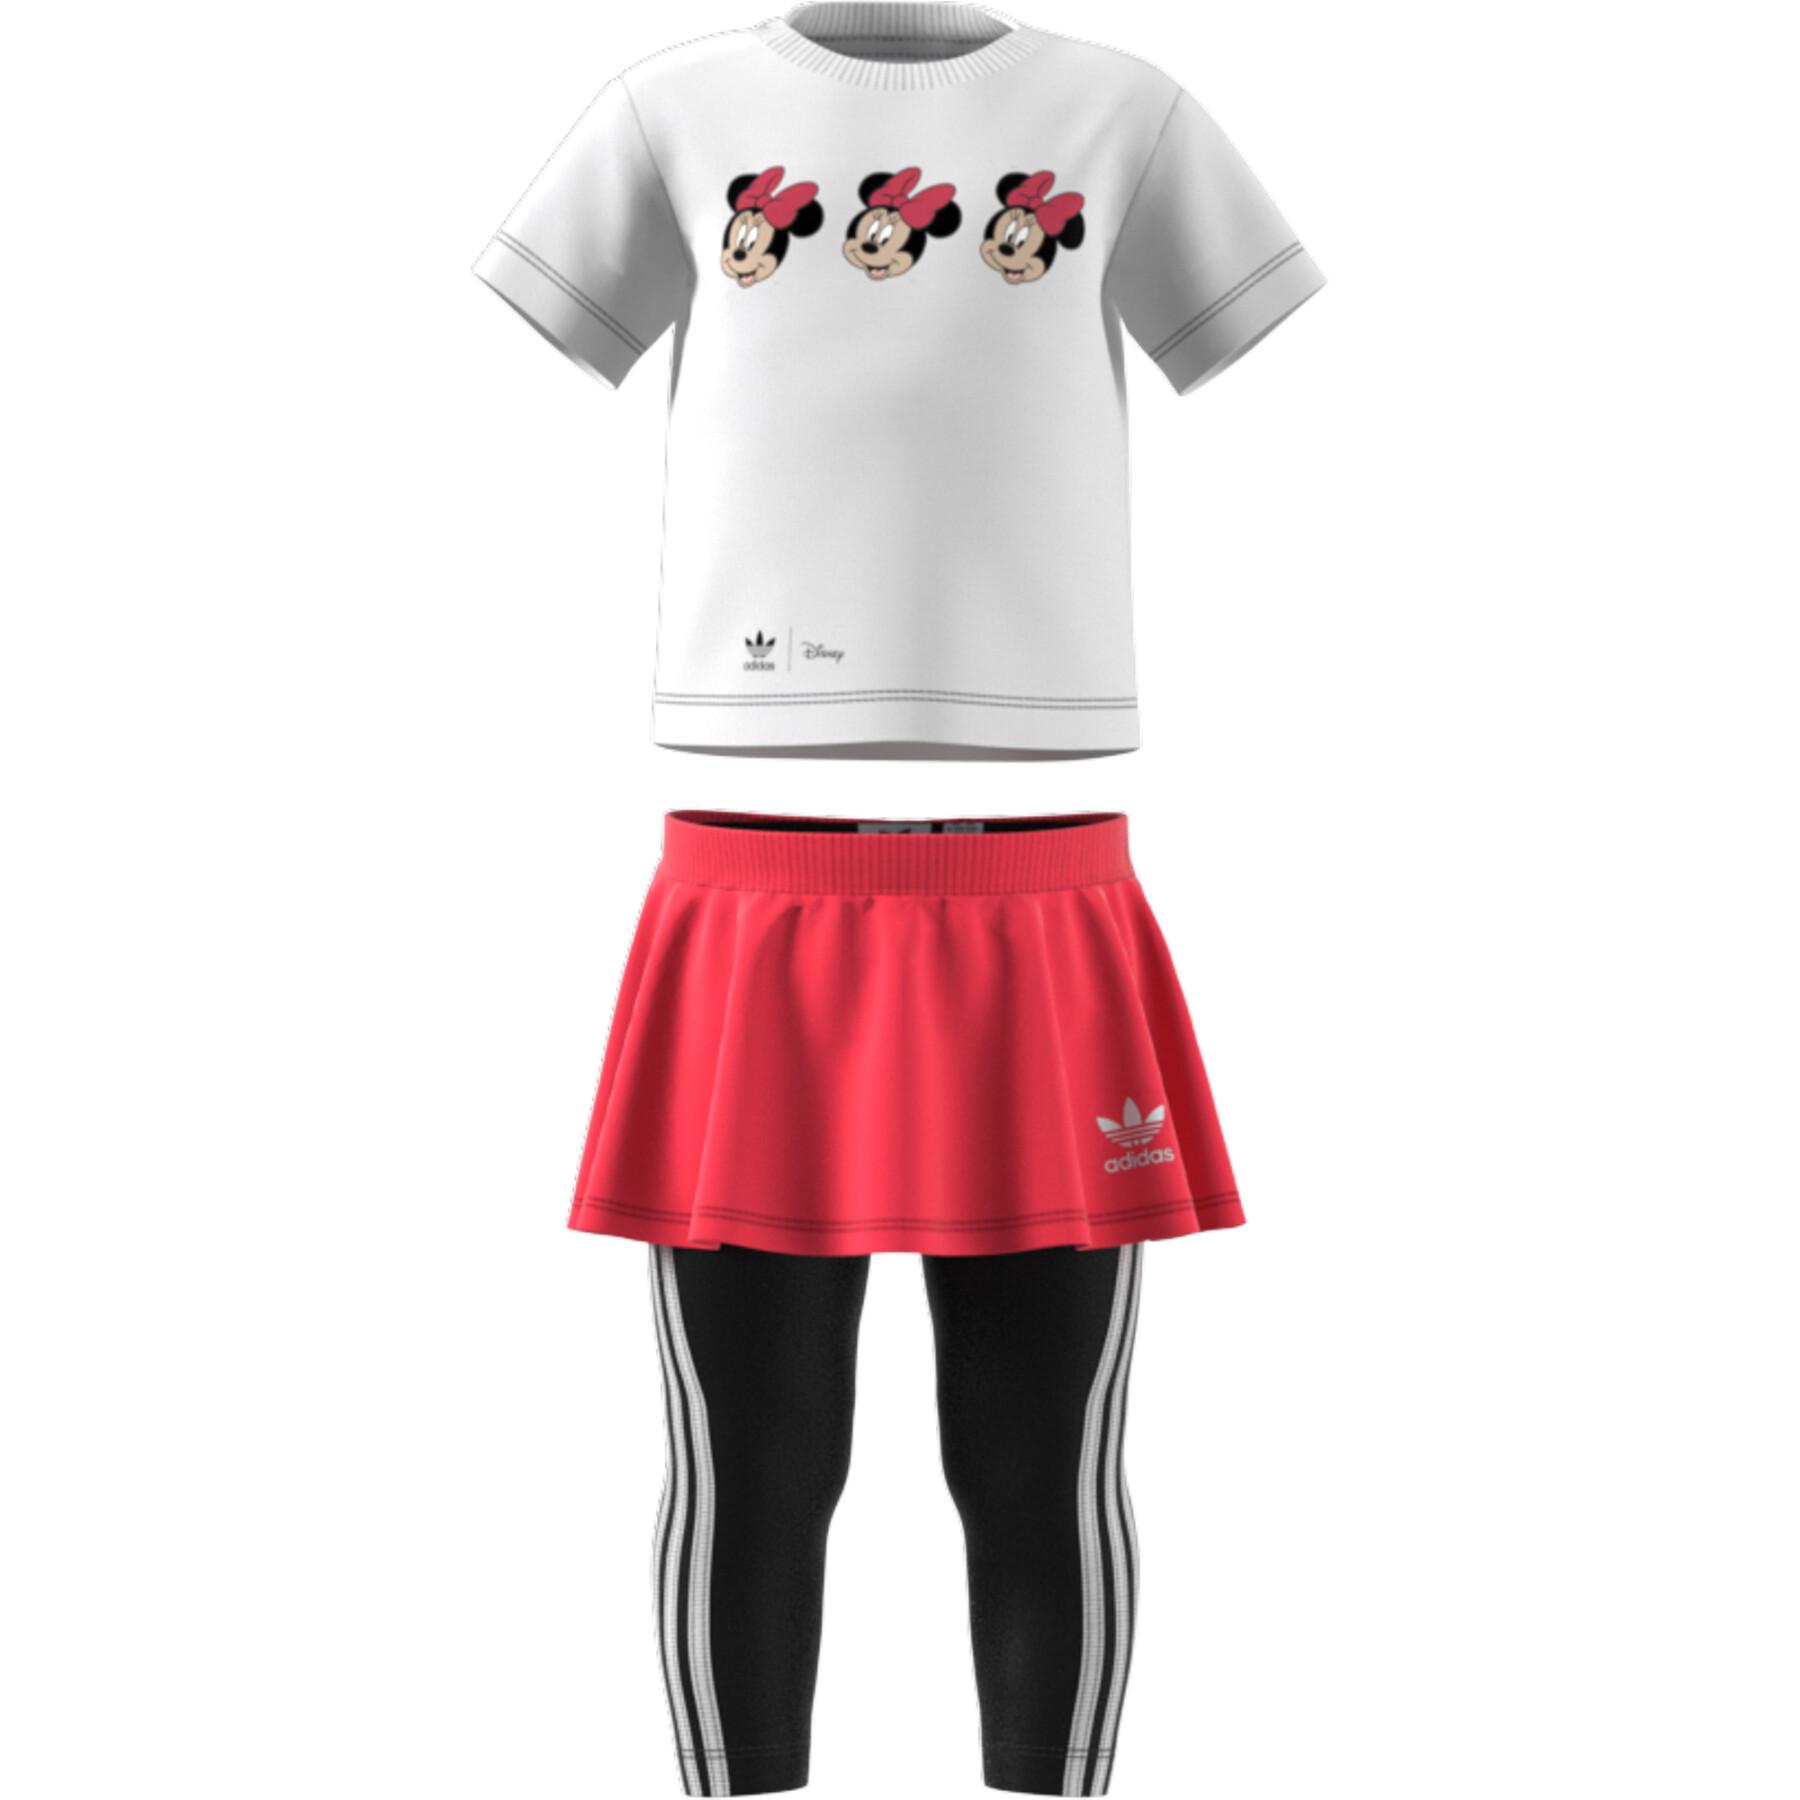 Completo sportivo per bambini Adidas Originals Disney